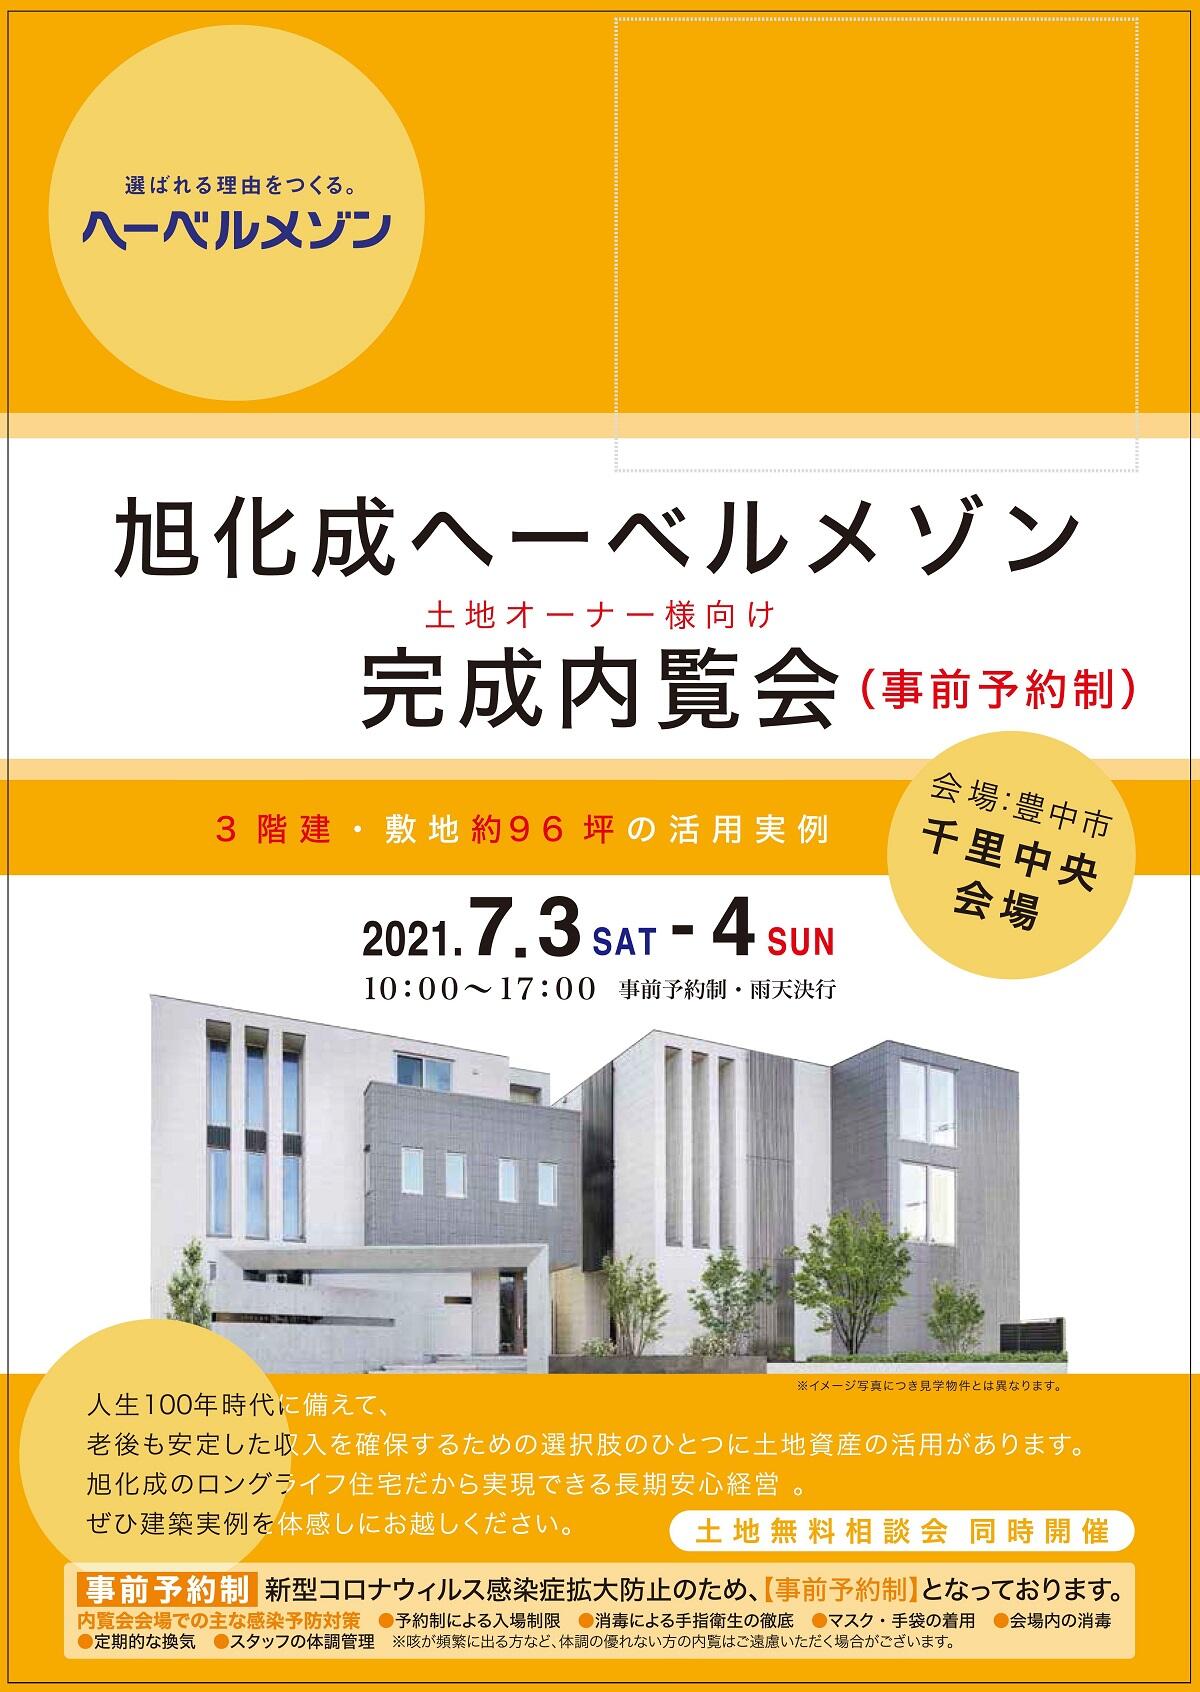 https://www.asahi-kasei.co.jp/maison/hebelplaza/blog/18/osaka/item/2021/20210621-3.jpg